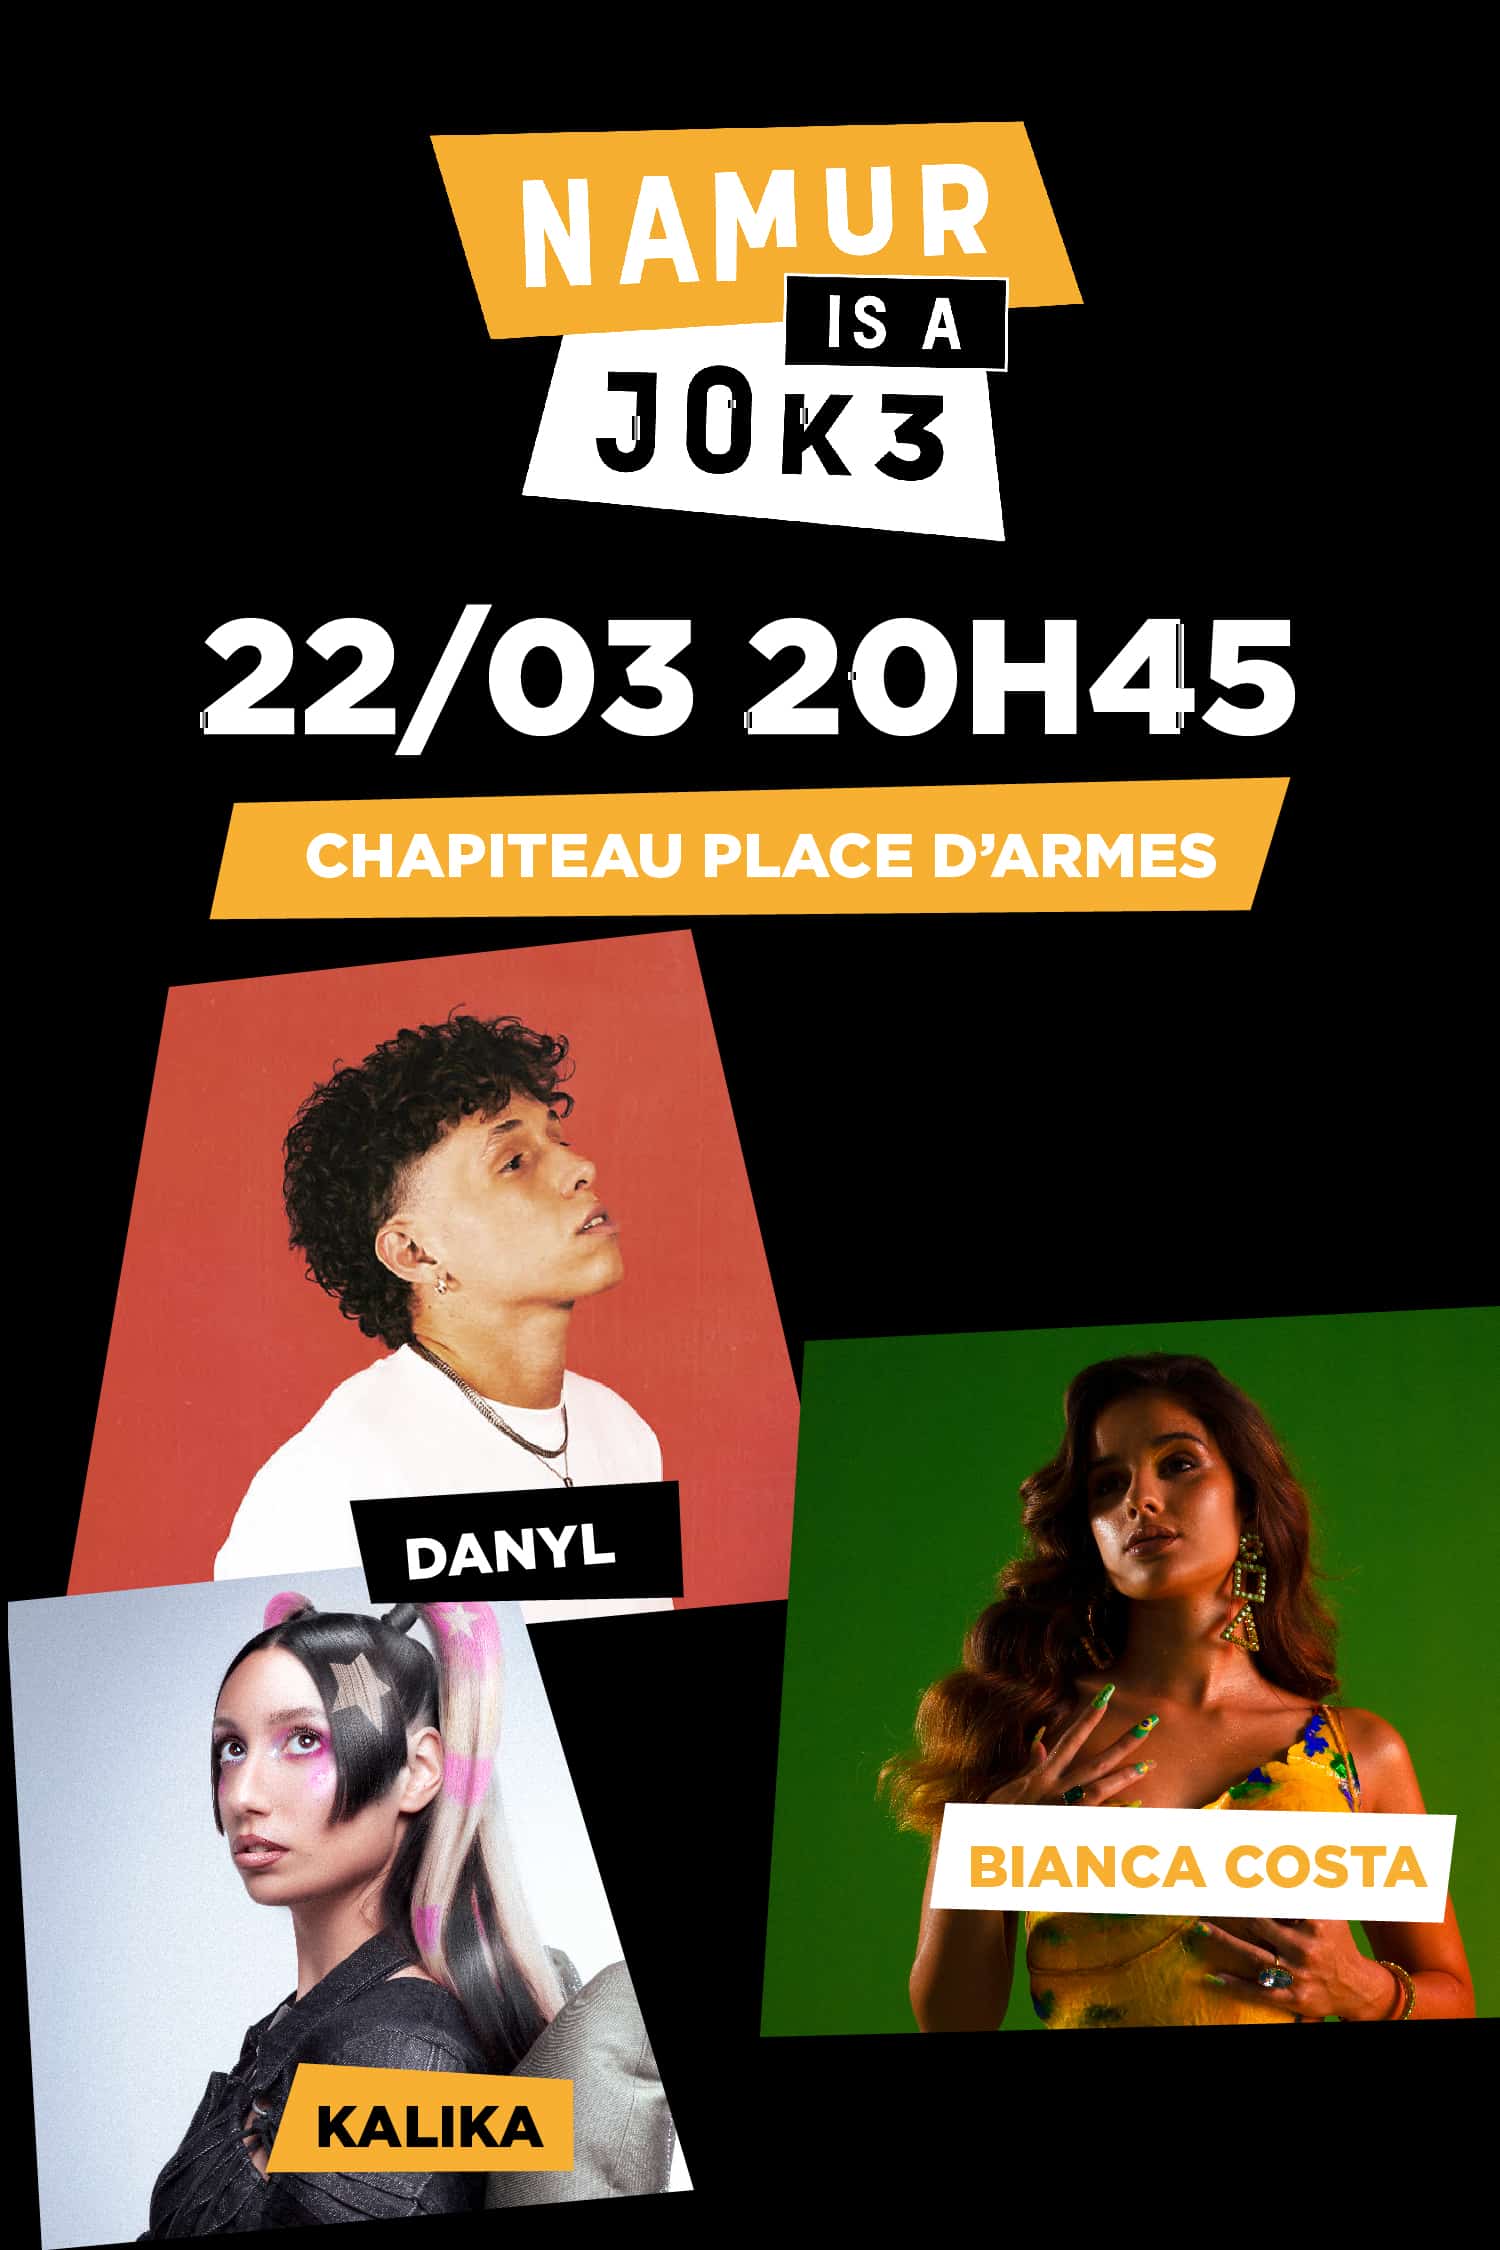 Danyl, Bianca Costa et Kalika en concert à Namur is a Joke le 22mars 2024 20h45, au Chapiteau Place d'Armes